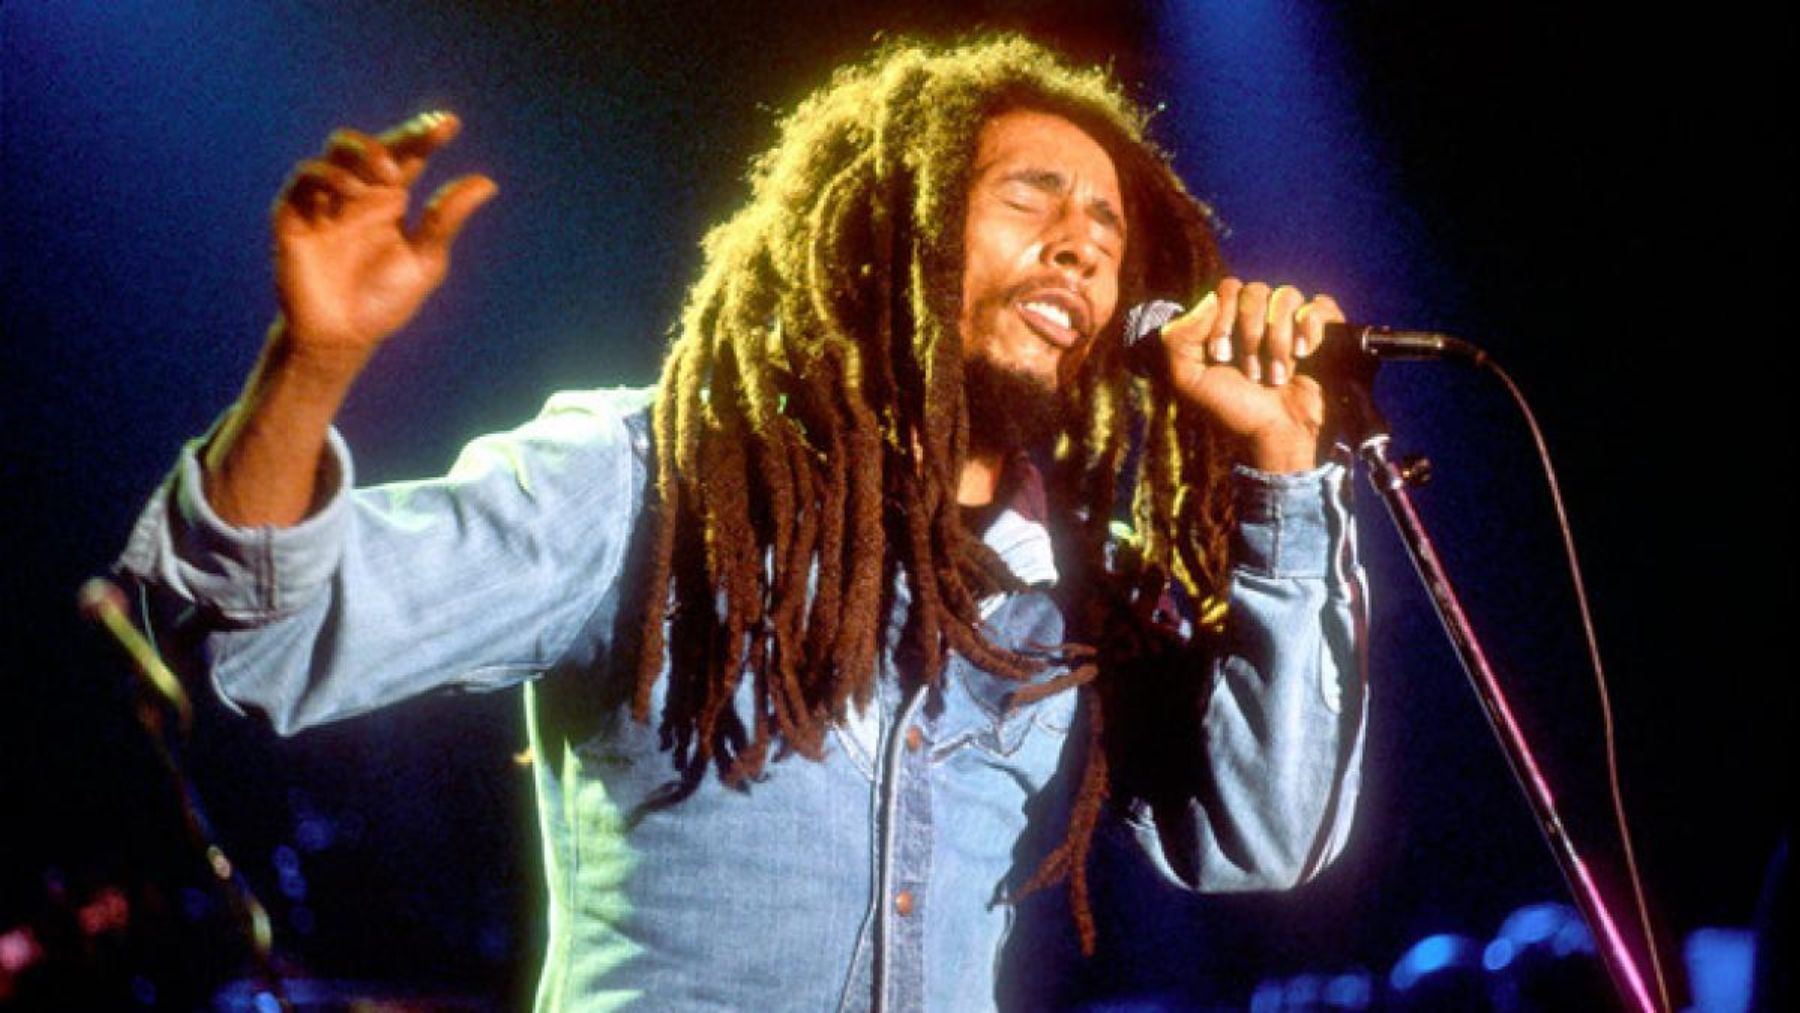 Descubre algunos de los datos más curiosos de la vida de Bob Marley